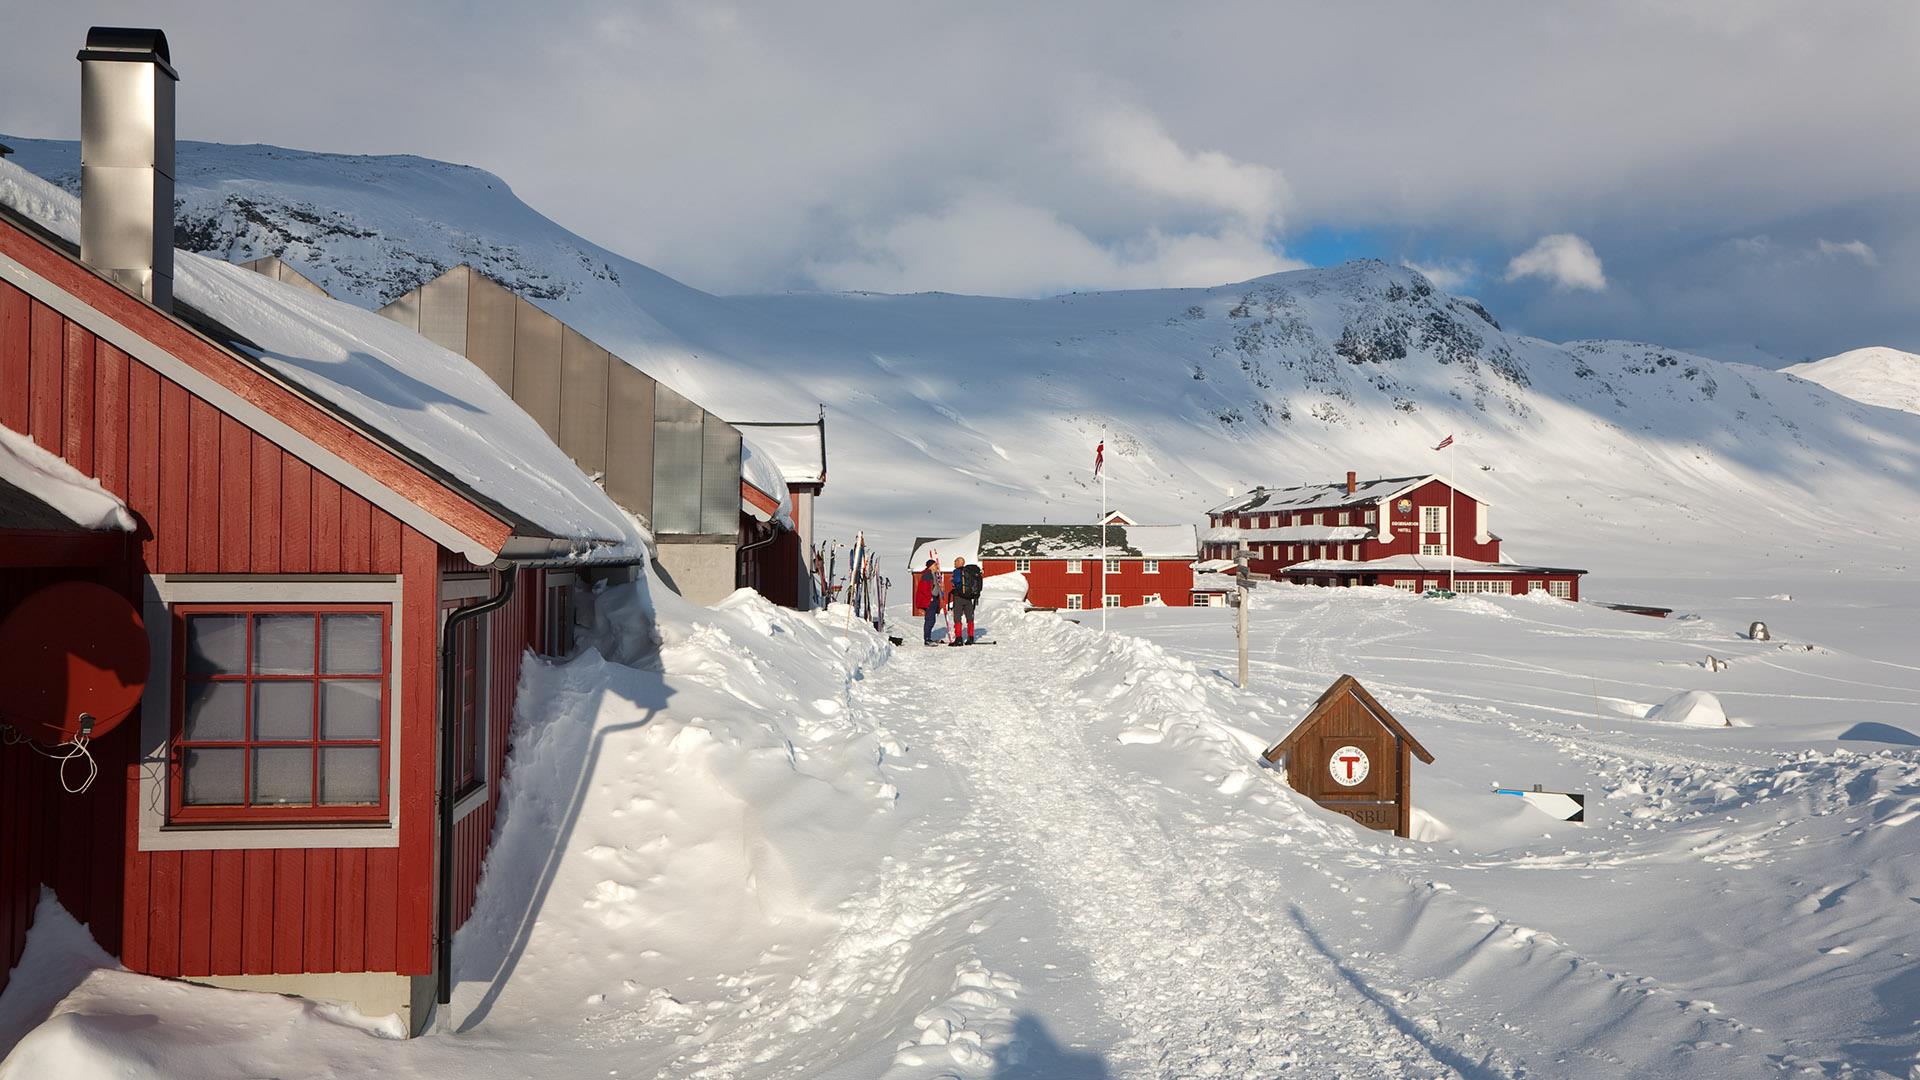 Røde bygninger (en turisthytte og et hotell) inne i fjellet om vinteren med masse snø